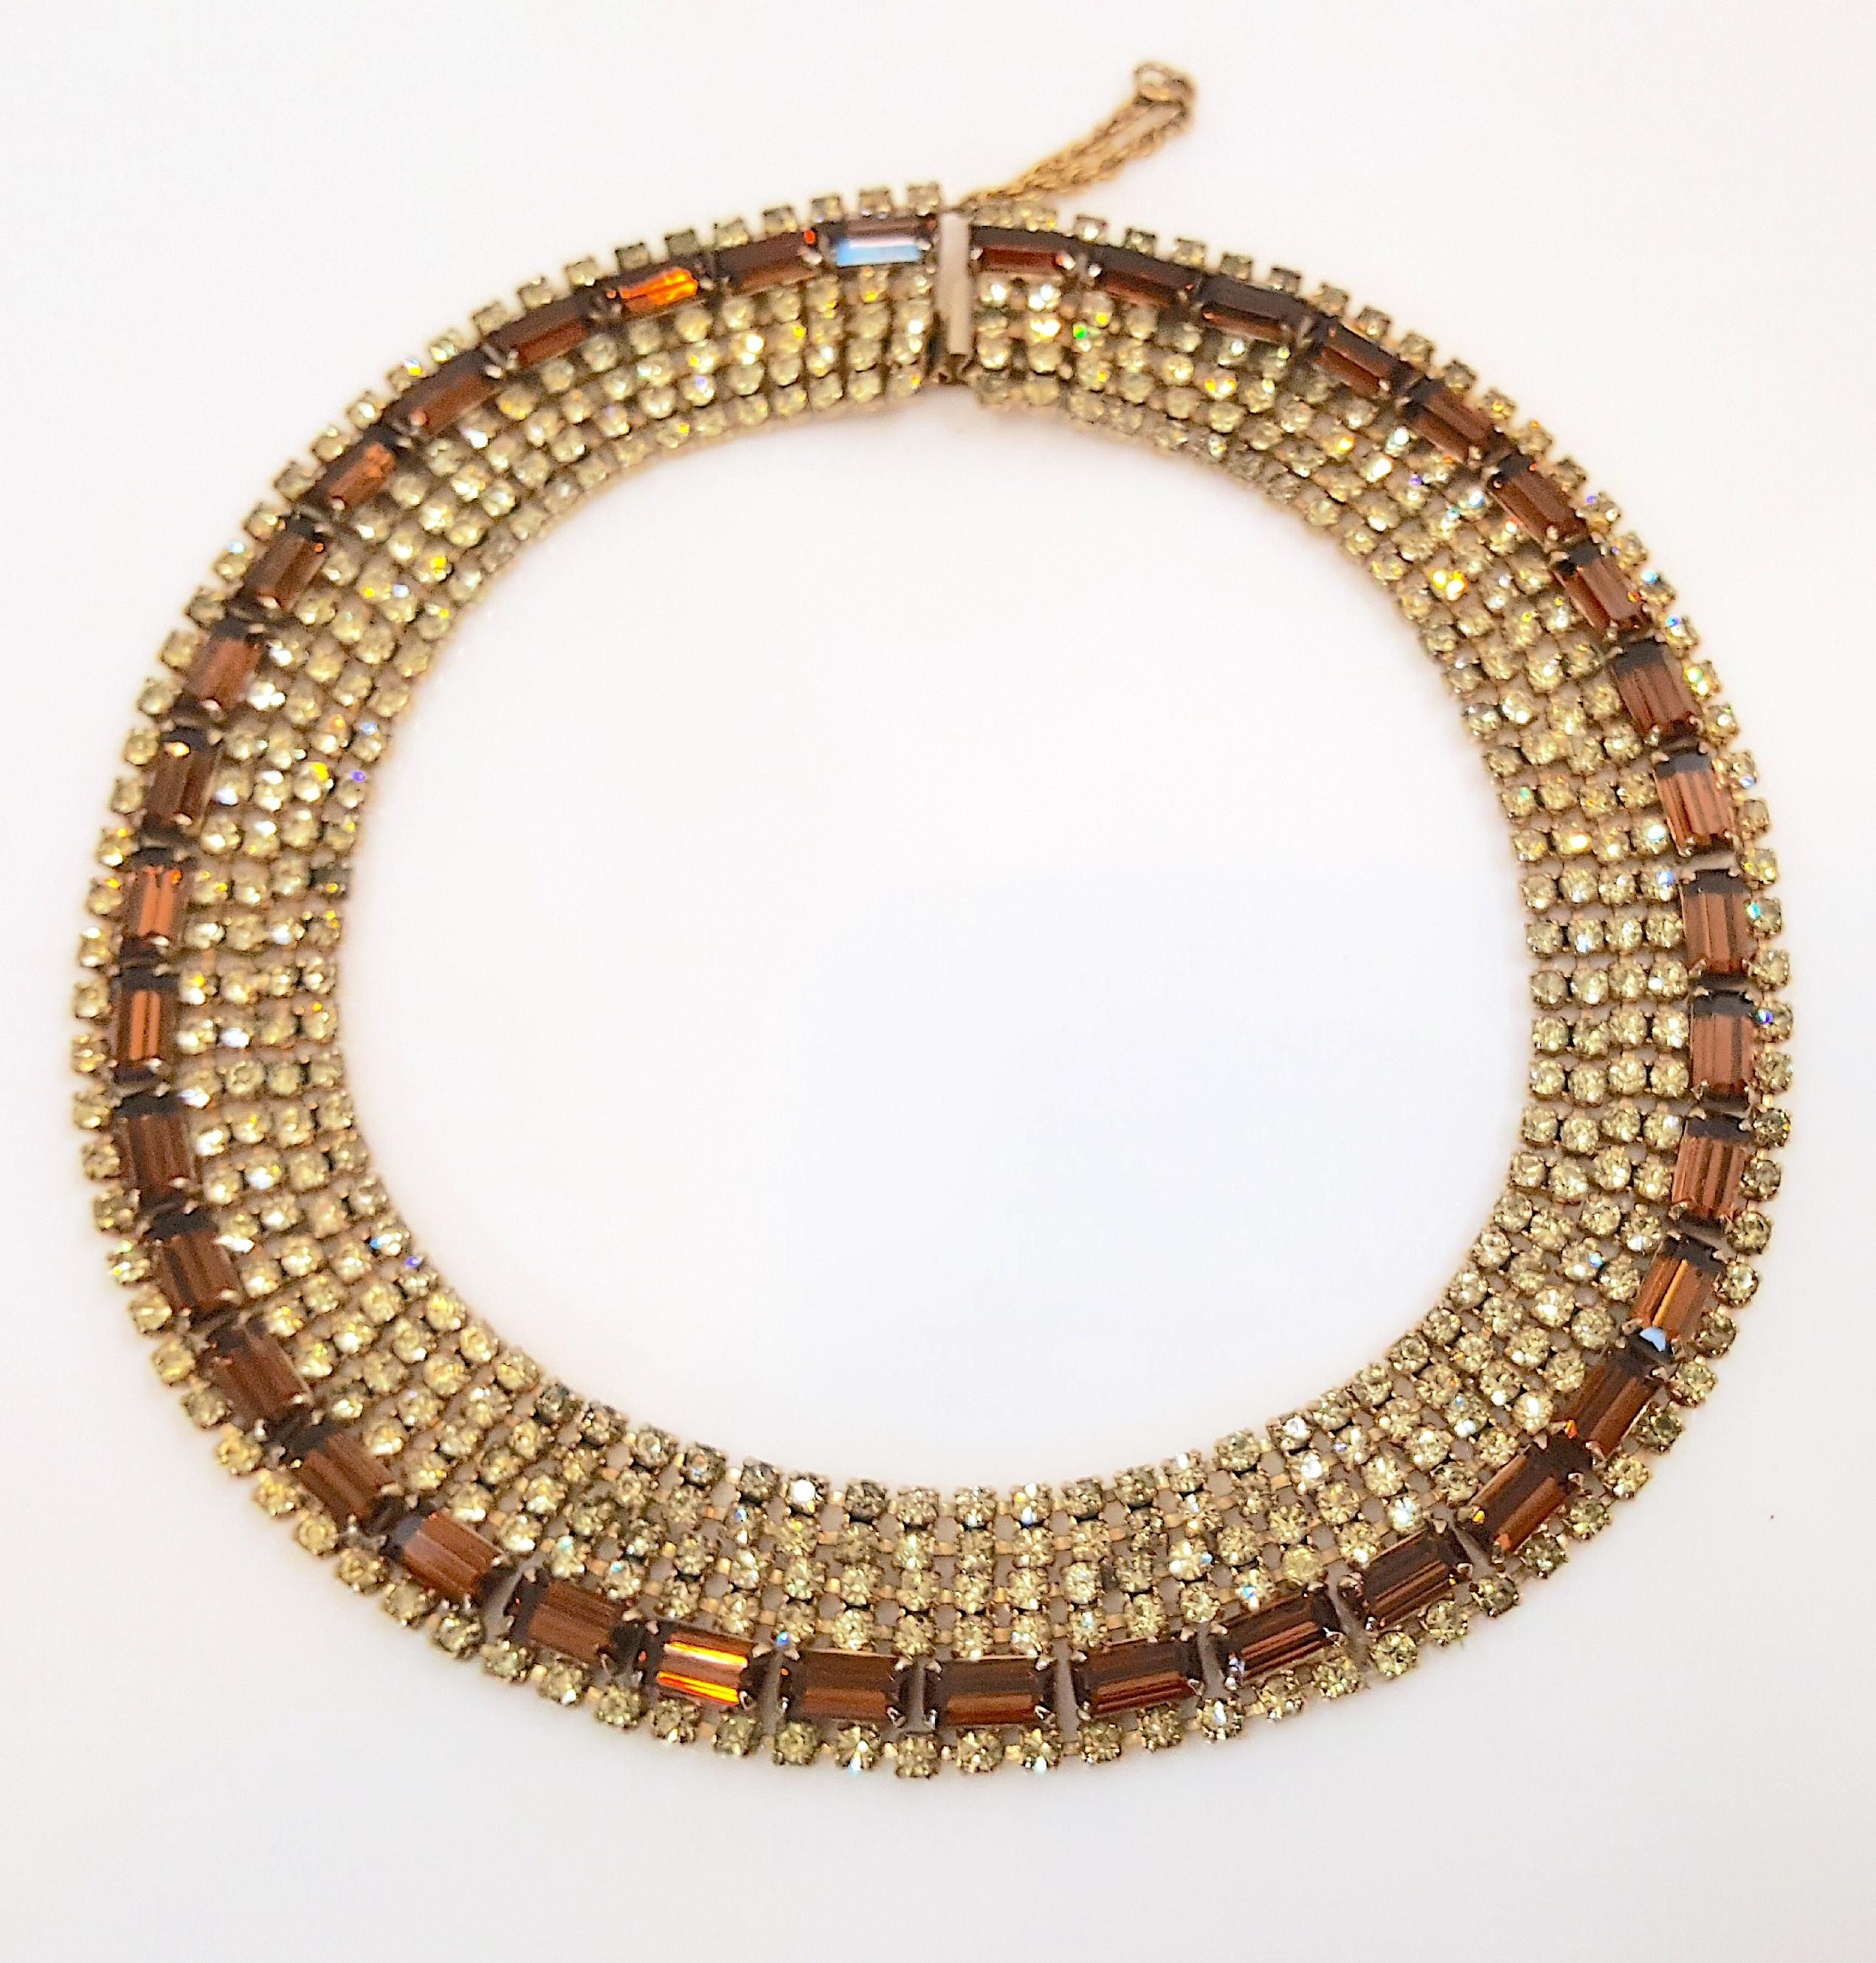 Alors qu'il fabriquait des colliers fantaisie haute-couture similaires pour Christian Dior au milieu du siècle dernier, le designer Max Muller, basé près de Kaufbeuren, en Allemagne de l'Ouest, a créé ce collier ras-de-cou en métal doré non signé,